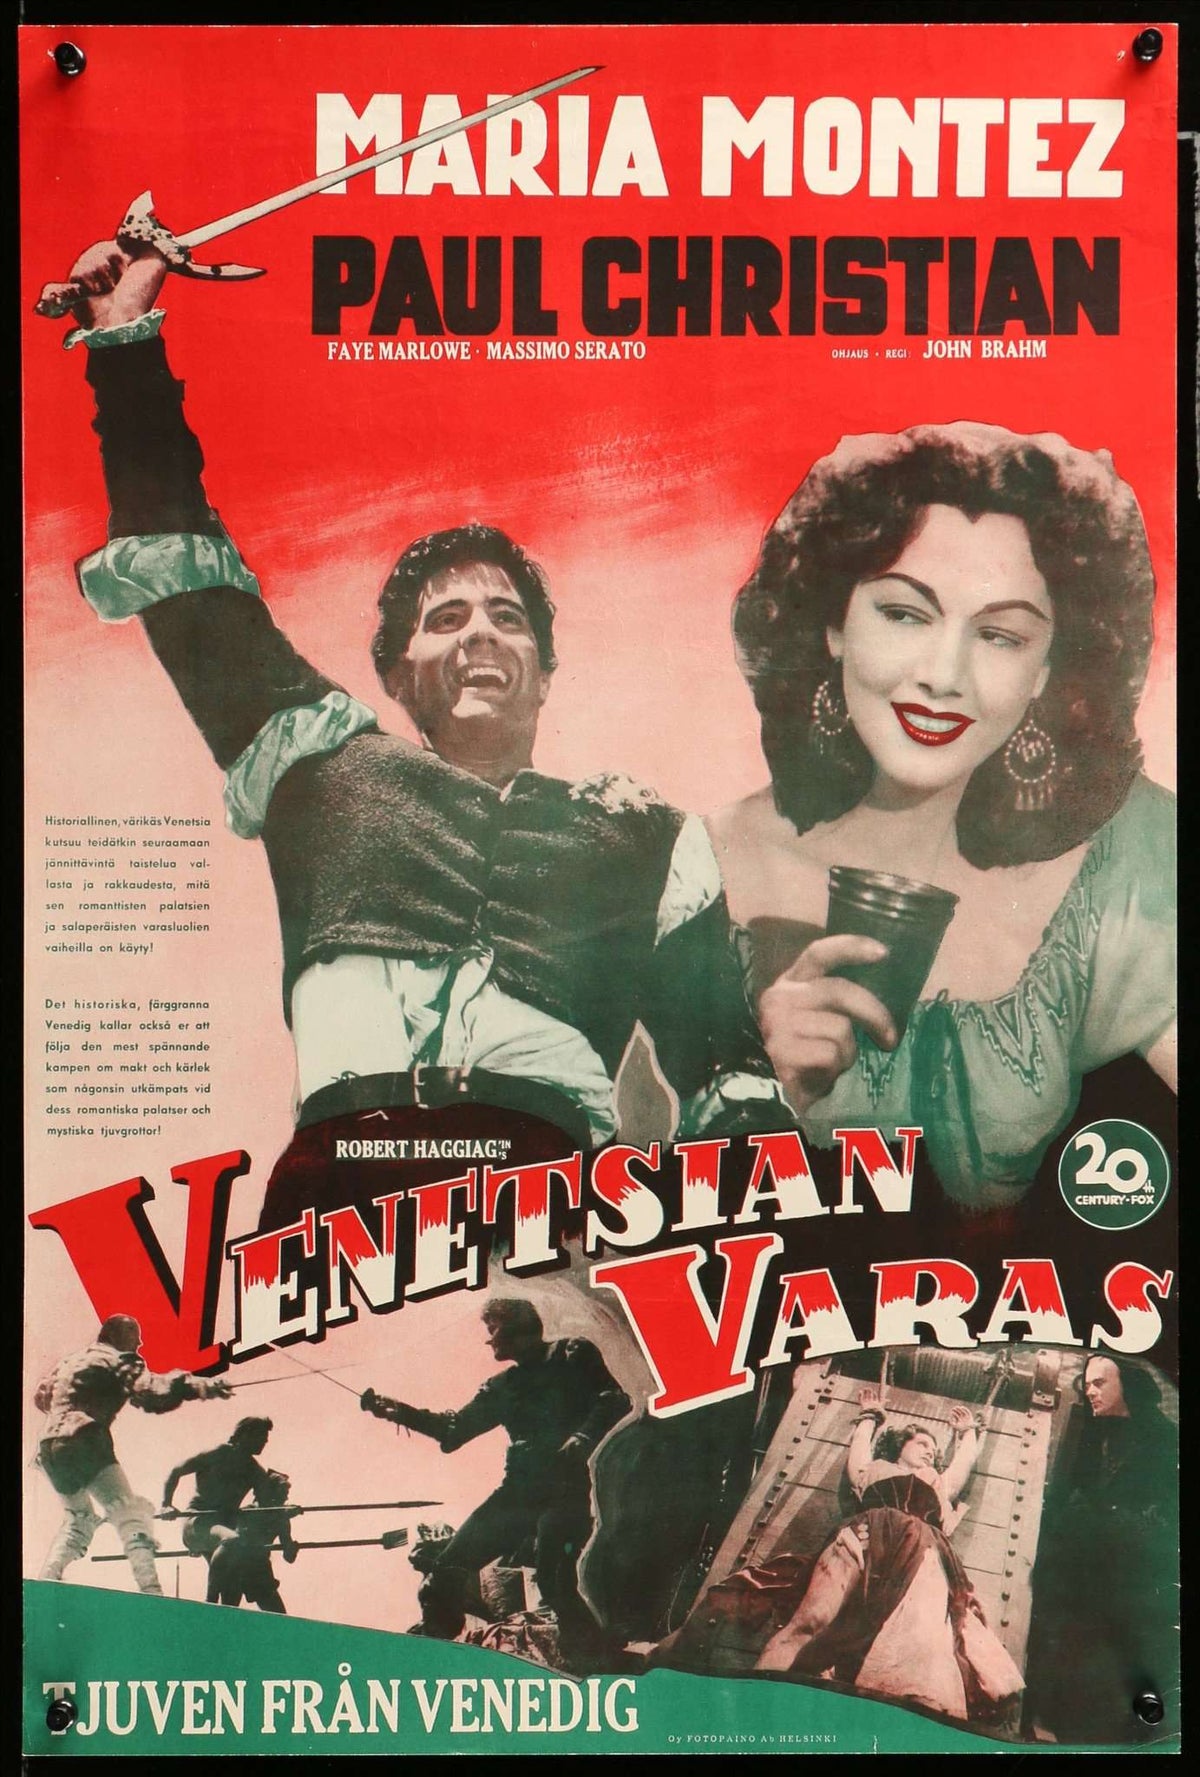 Thief of Venice (1950) original movie poster for sale at Original Film Art